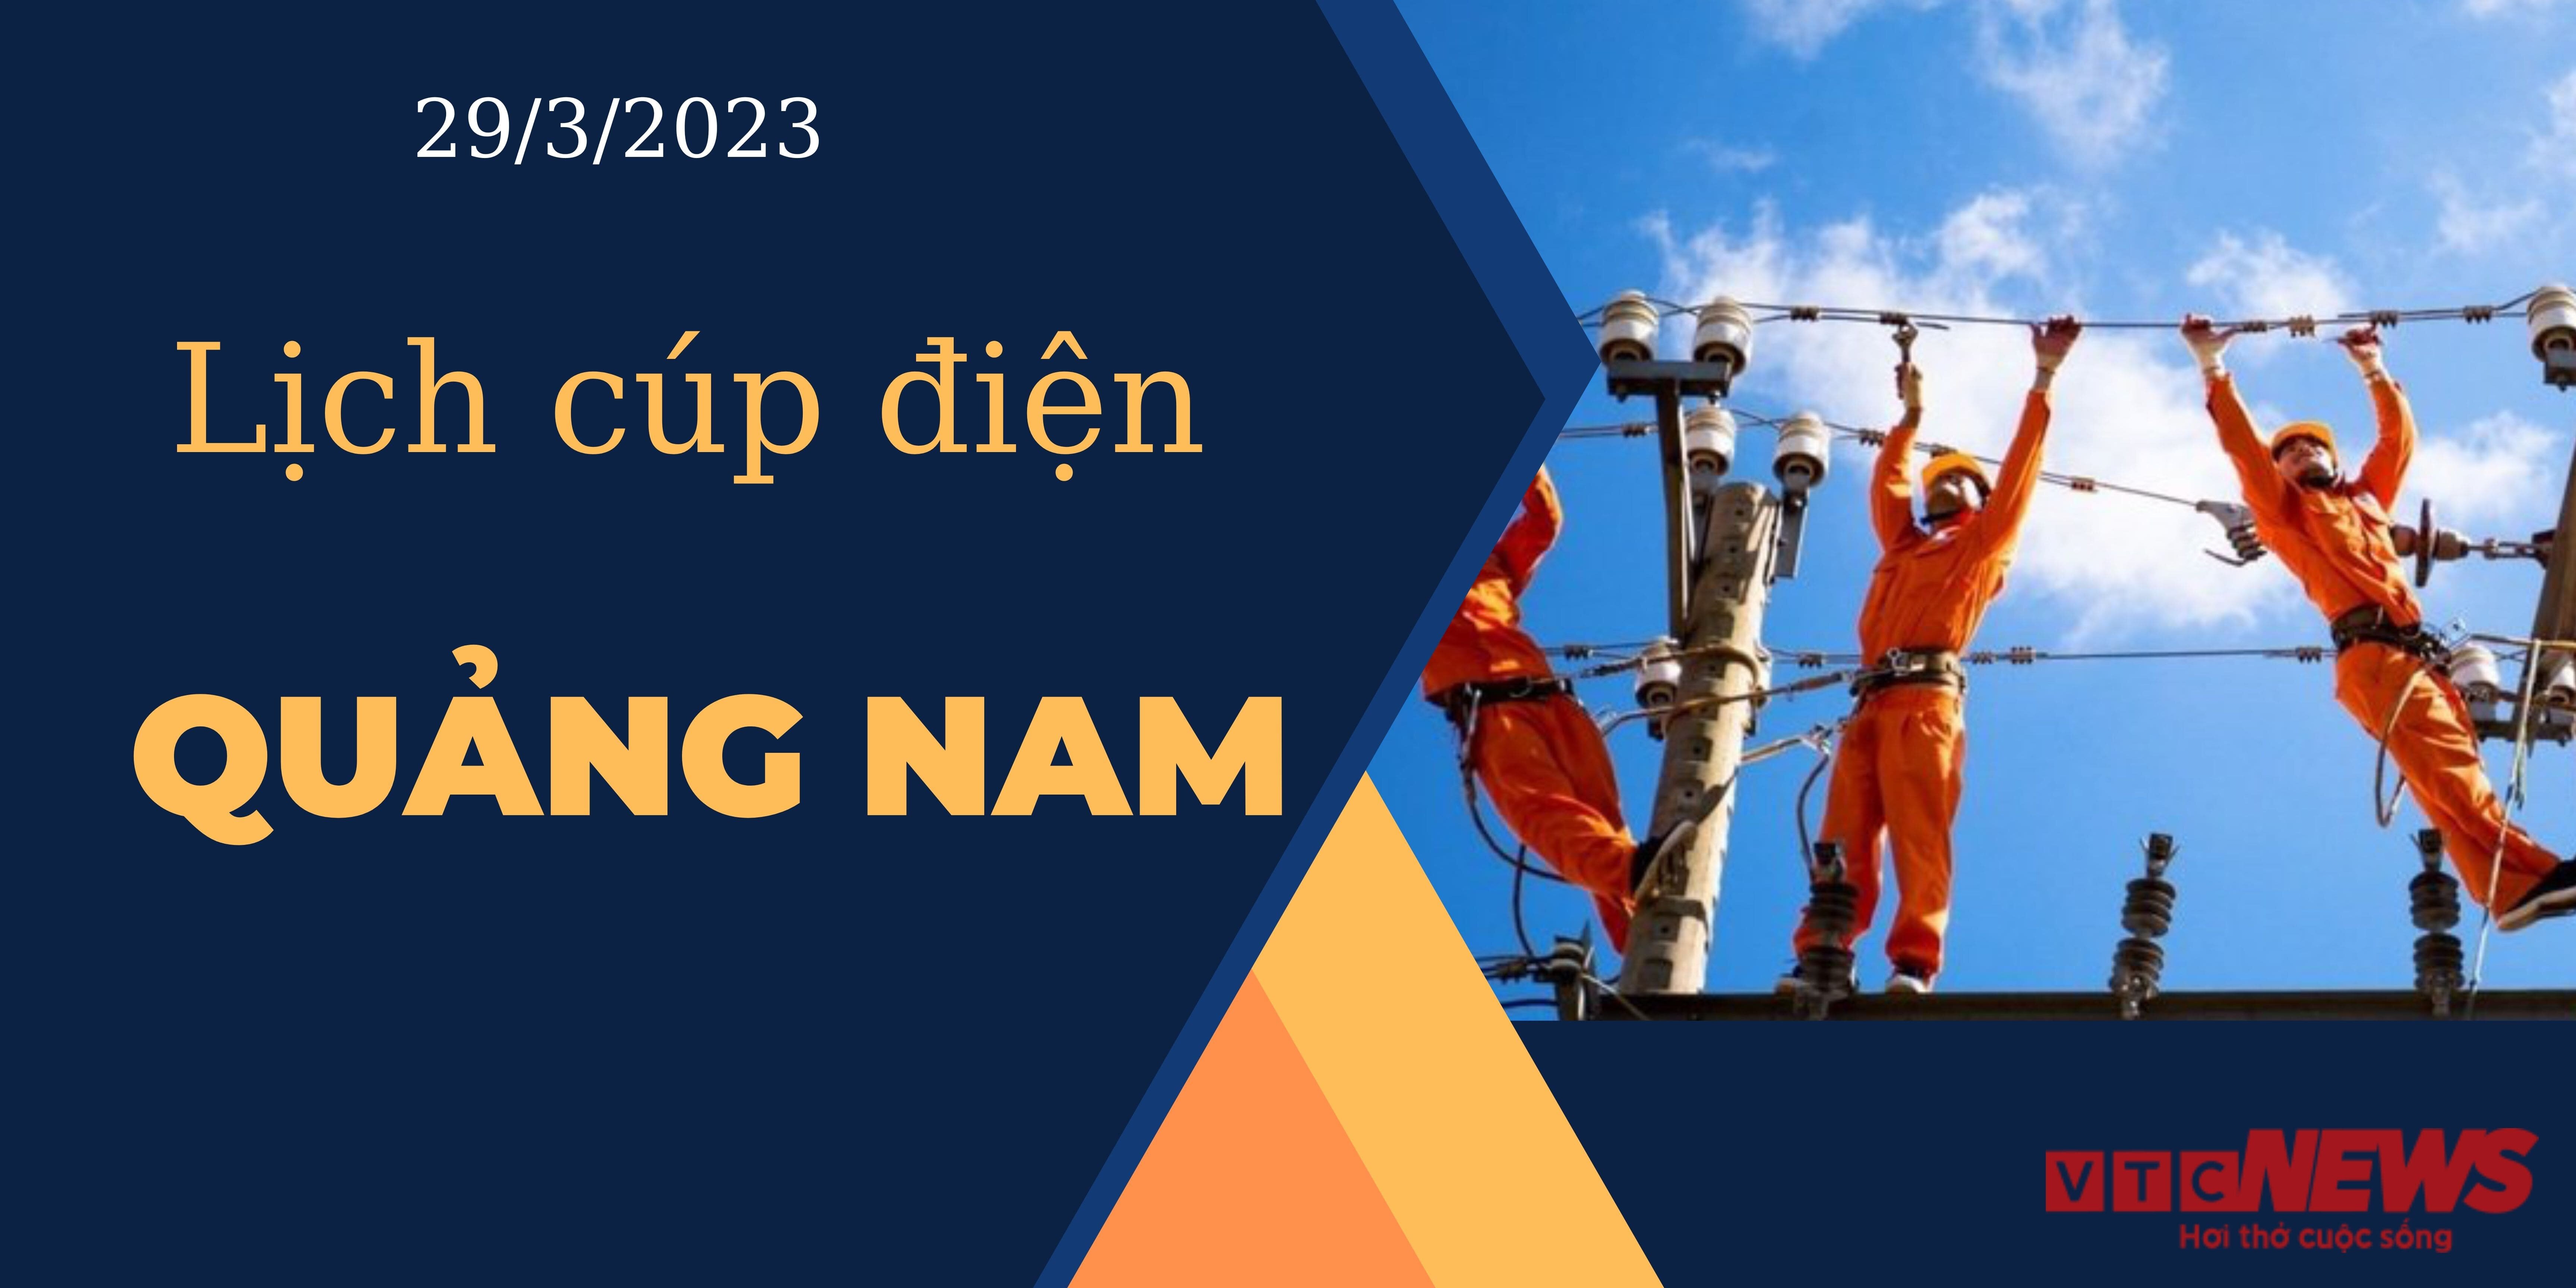 Lịch cúp điện hôm nay tại Quảng Nam ngày 29/3/2023 - 1